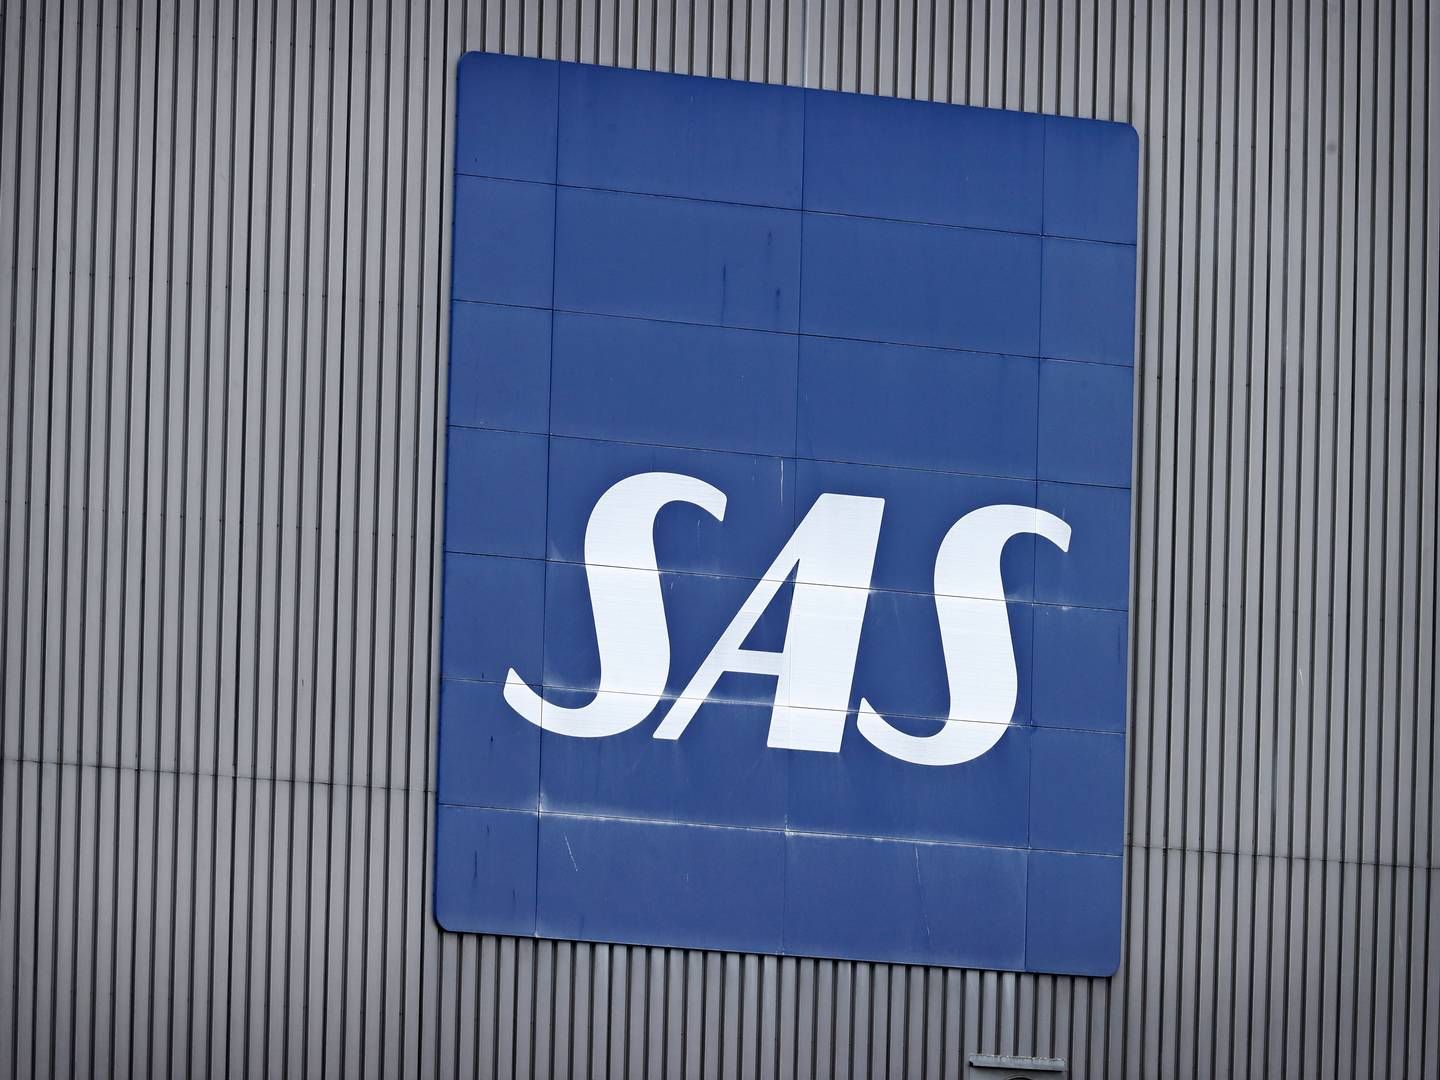 SAS holder pressemøde tirsdag. | Foto: Jens Dresling/Ritzau Scanpix